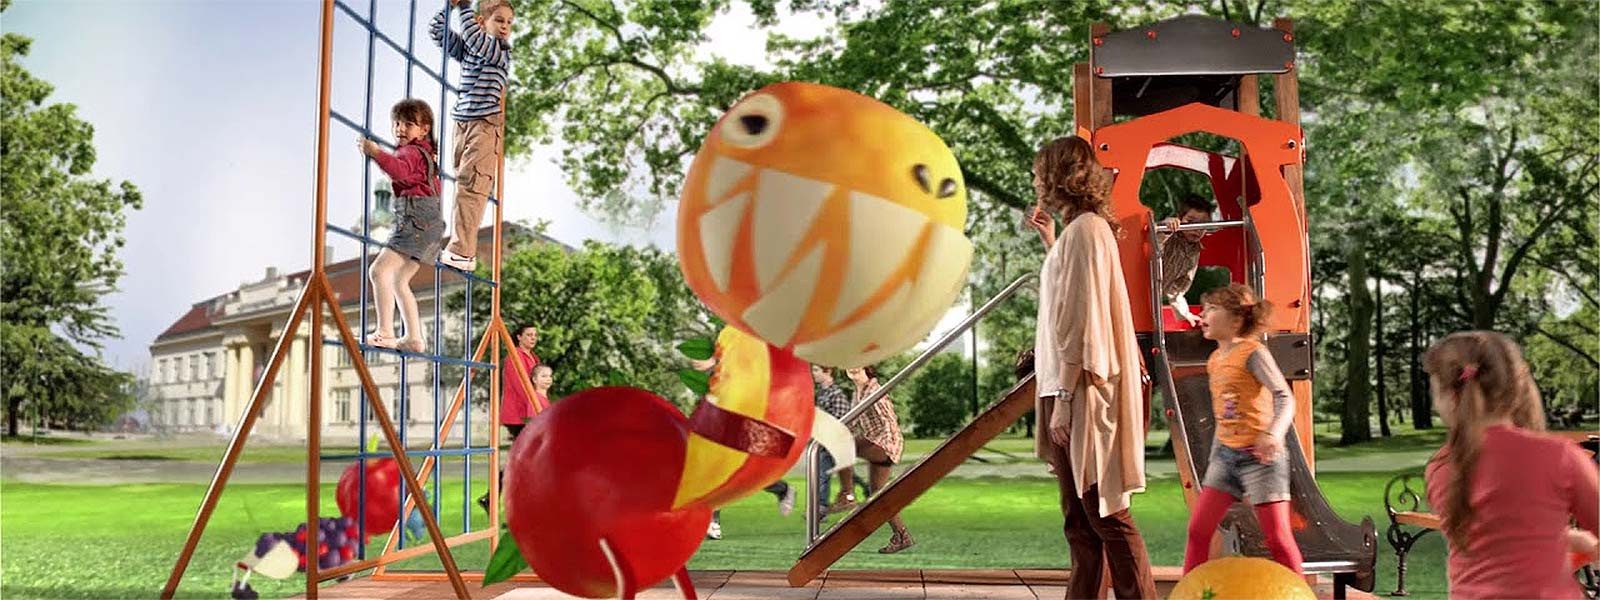 Deca se igraju u parku sa velikim jabuka i narandza igrackama